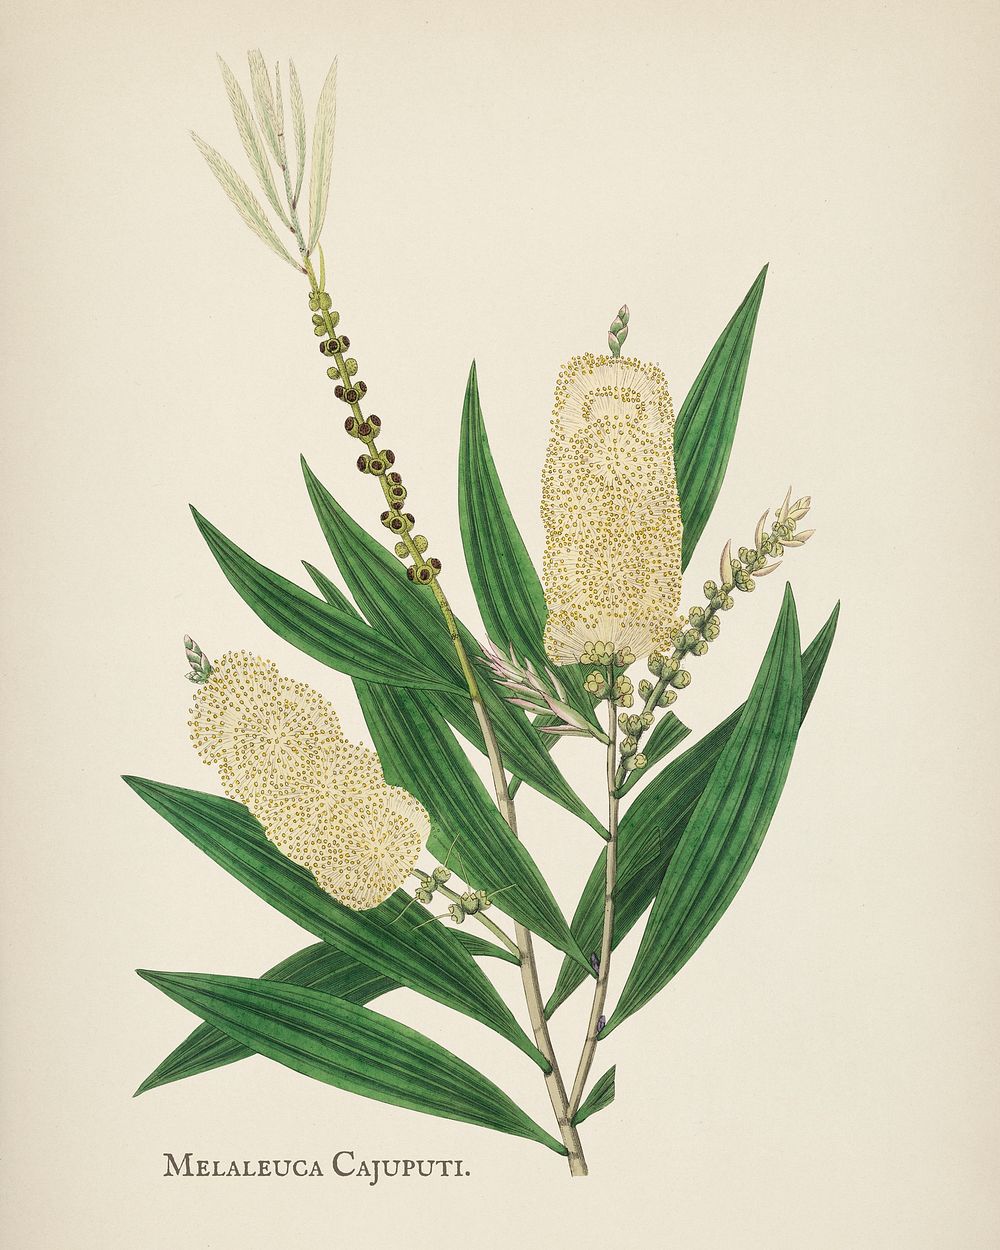 White samet (Melaleuca cajuputi) illustration from Medical Botany (1836) by John Stephenson and James Morss Churchill.